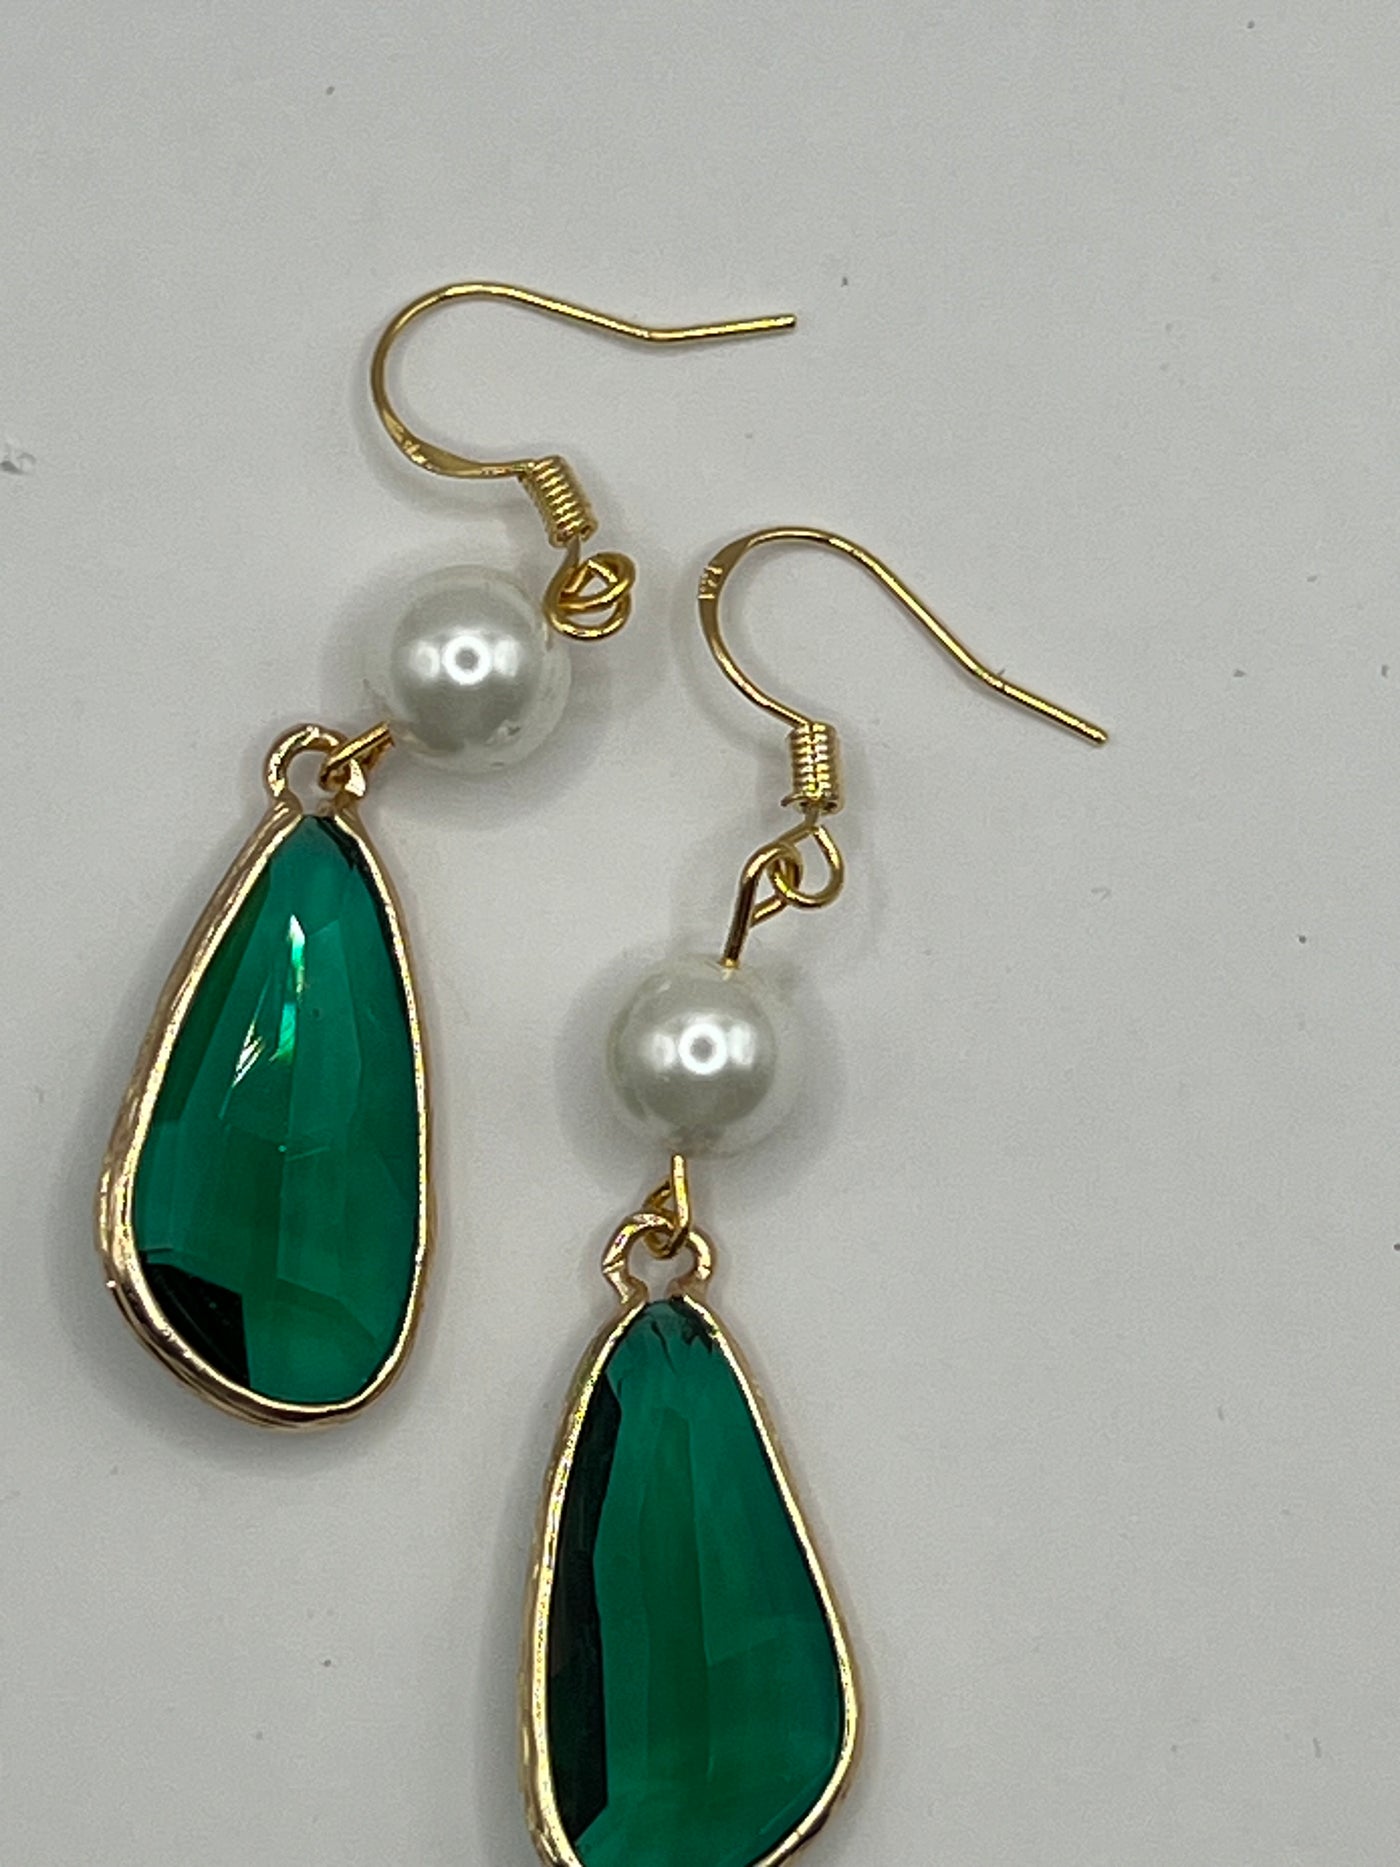 Magdalene earrings